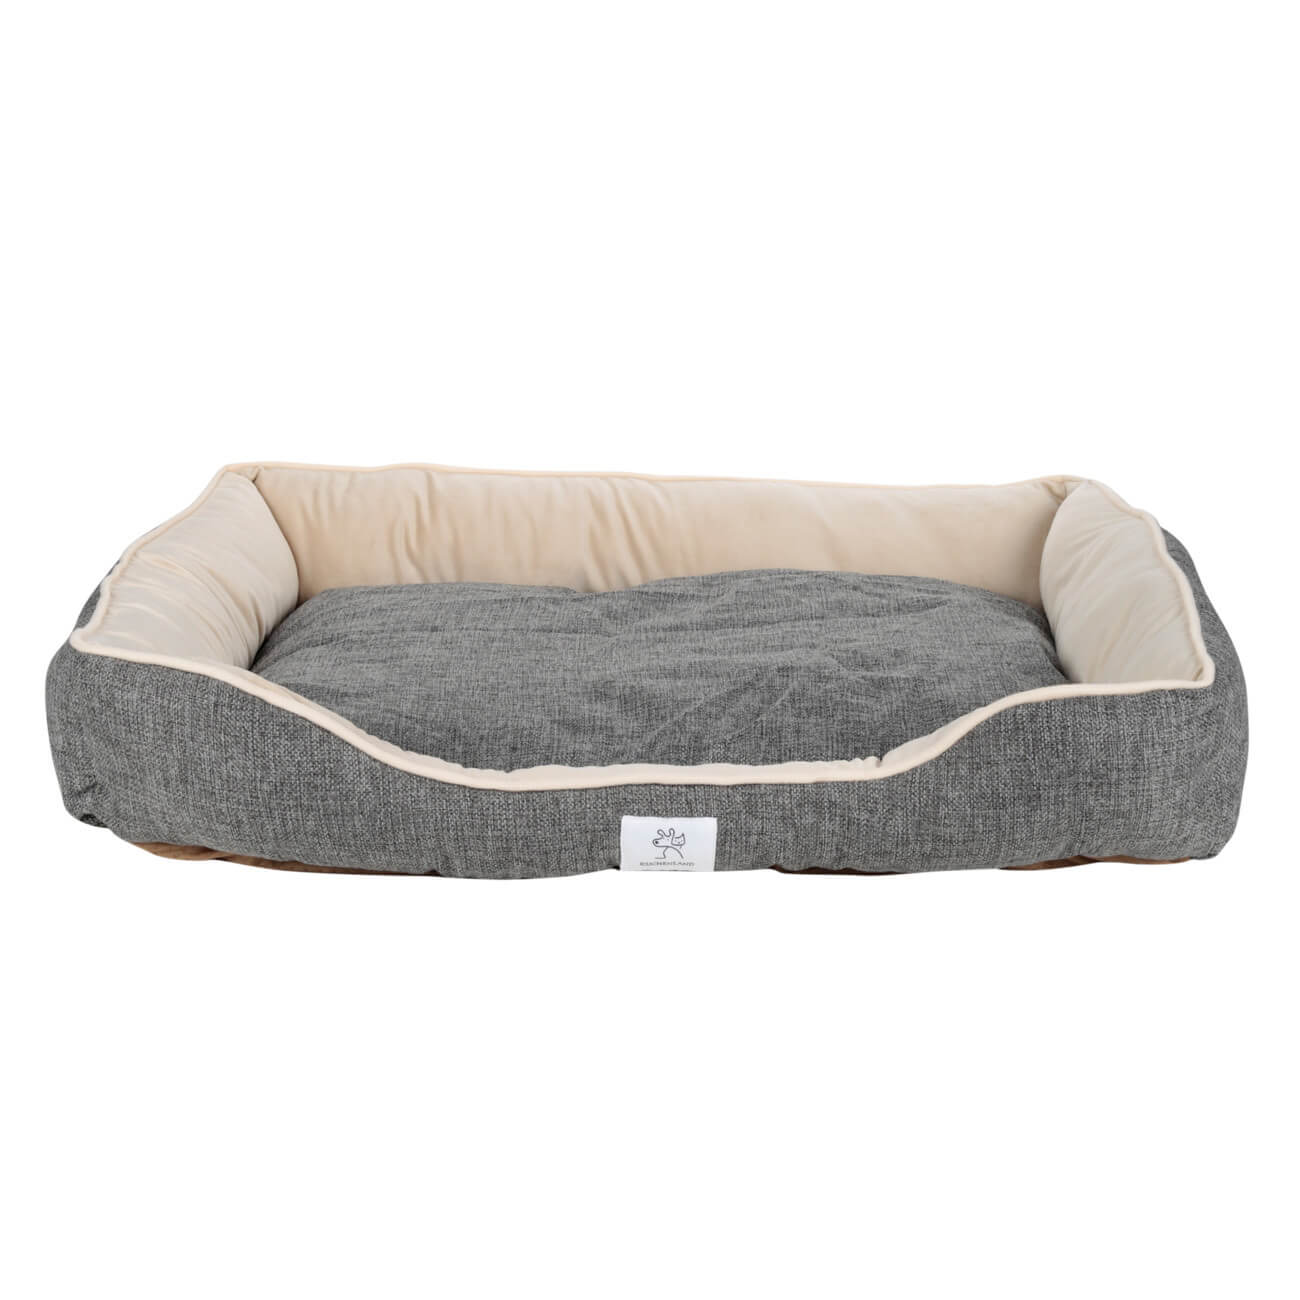 Лежак для животных, 75х59х14 см, полиэстер, темно-серый, Funny pet dogmoda лежак для животных шарм мех 2